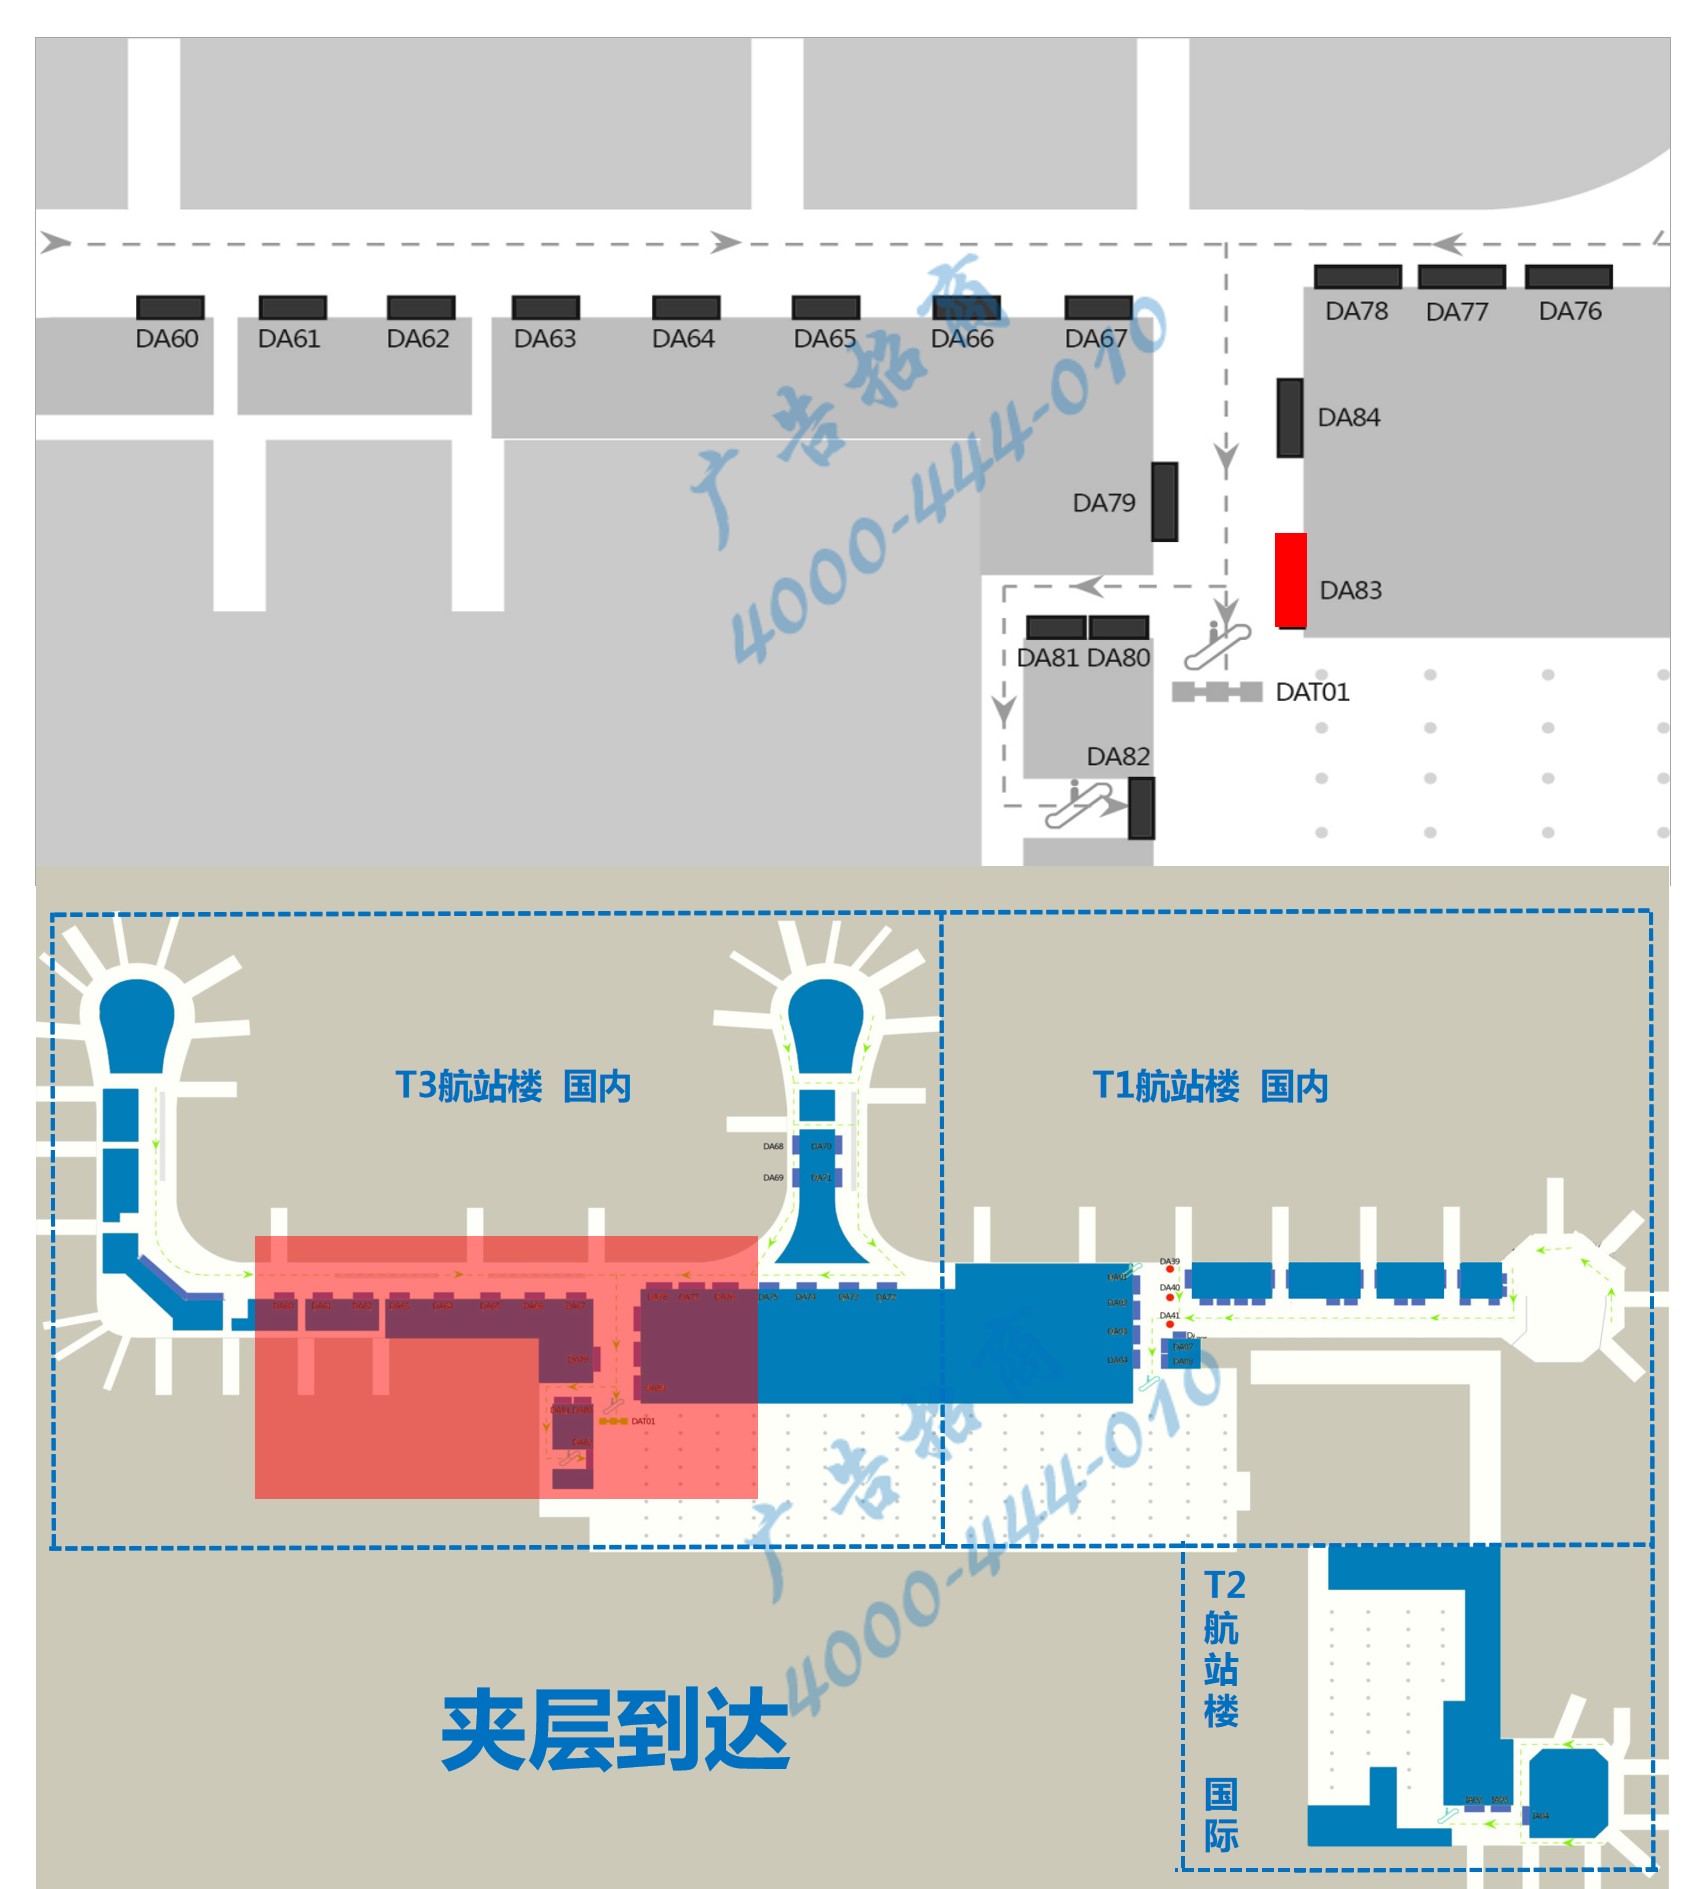 杭州机场广告-T3国内到达夹层汇集口墙体灯箱DA83点位图